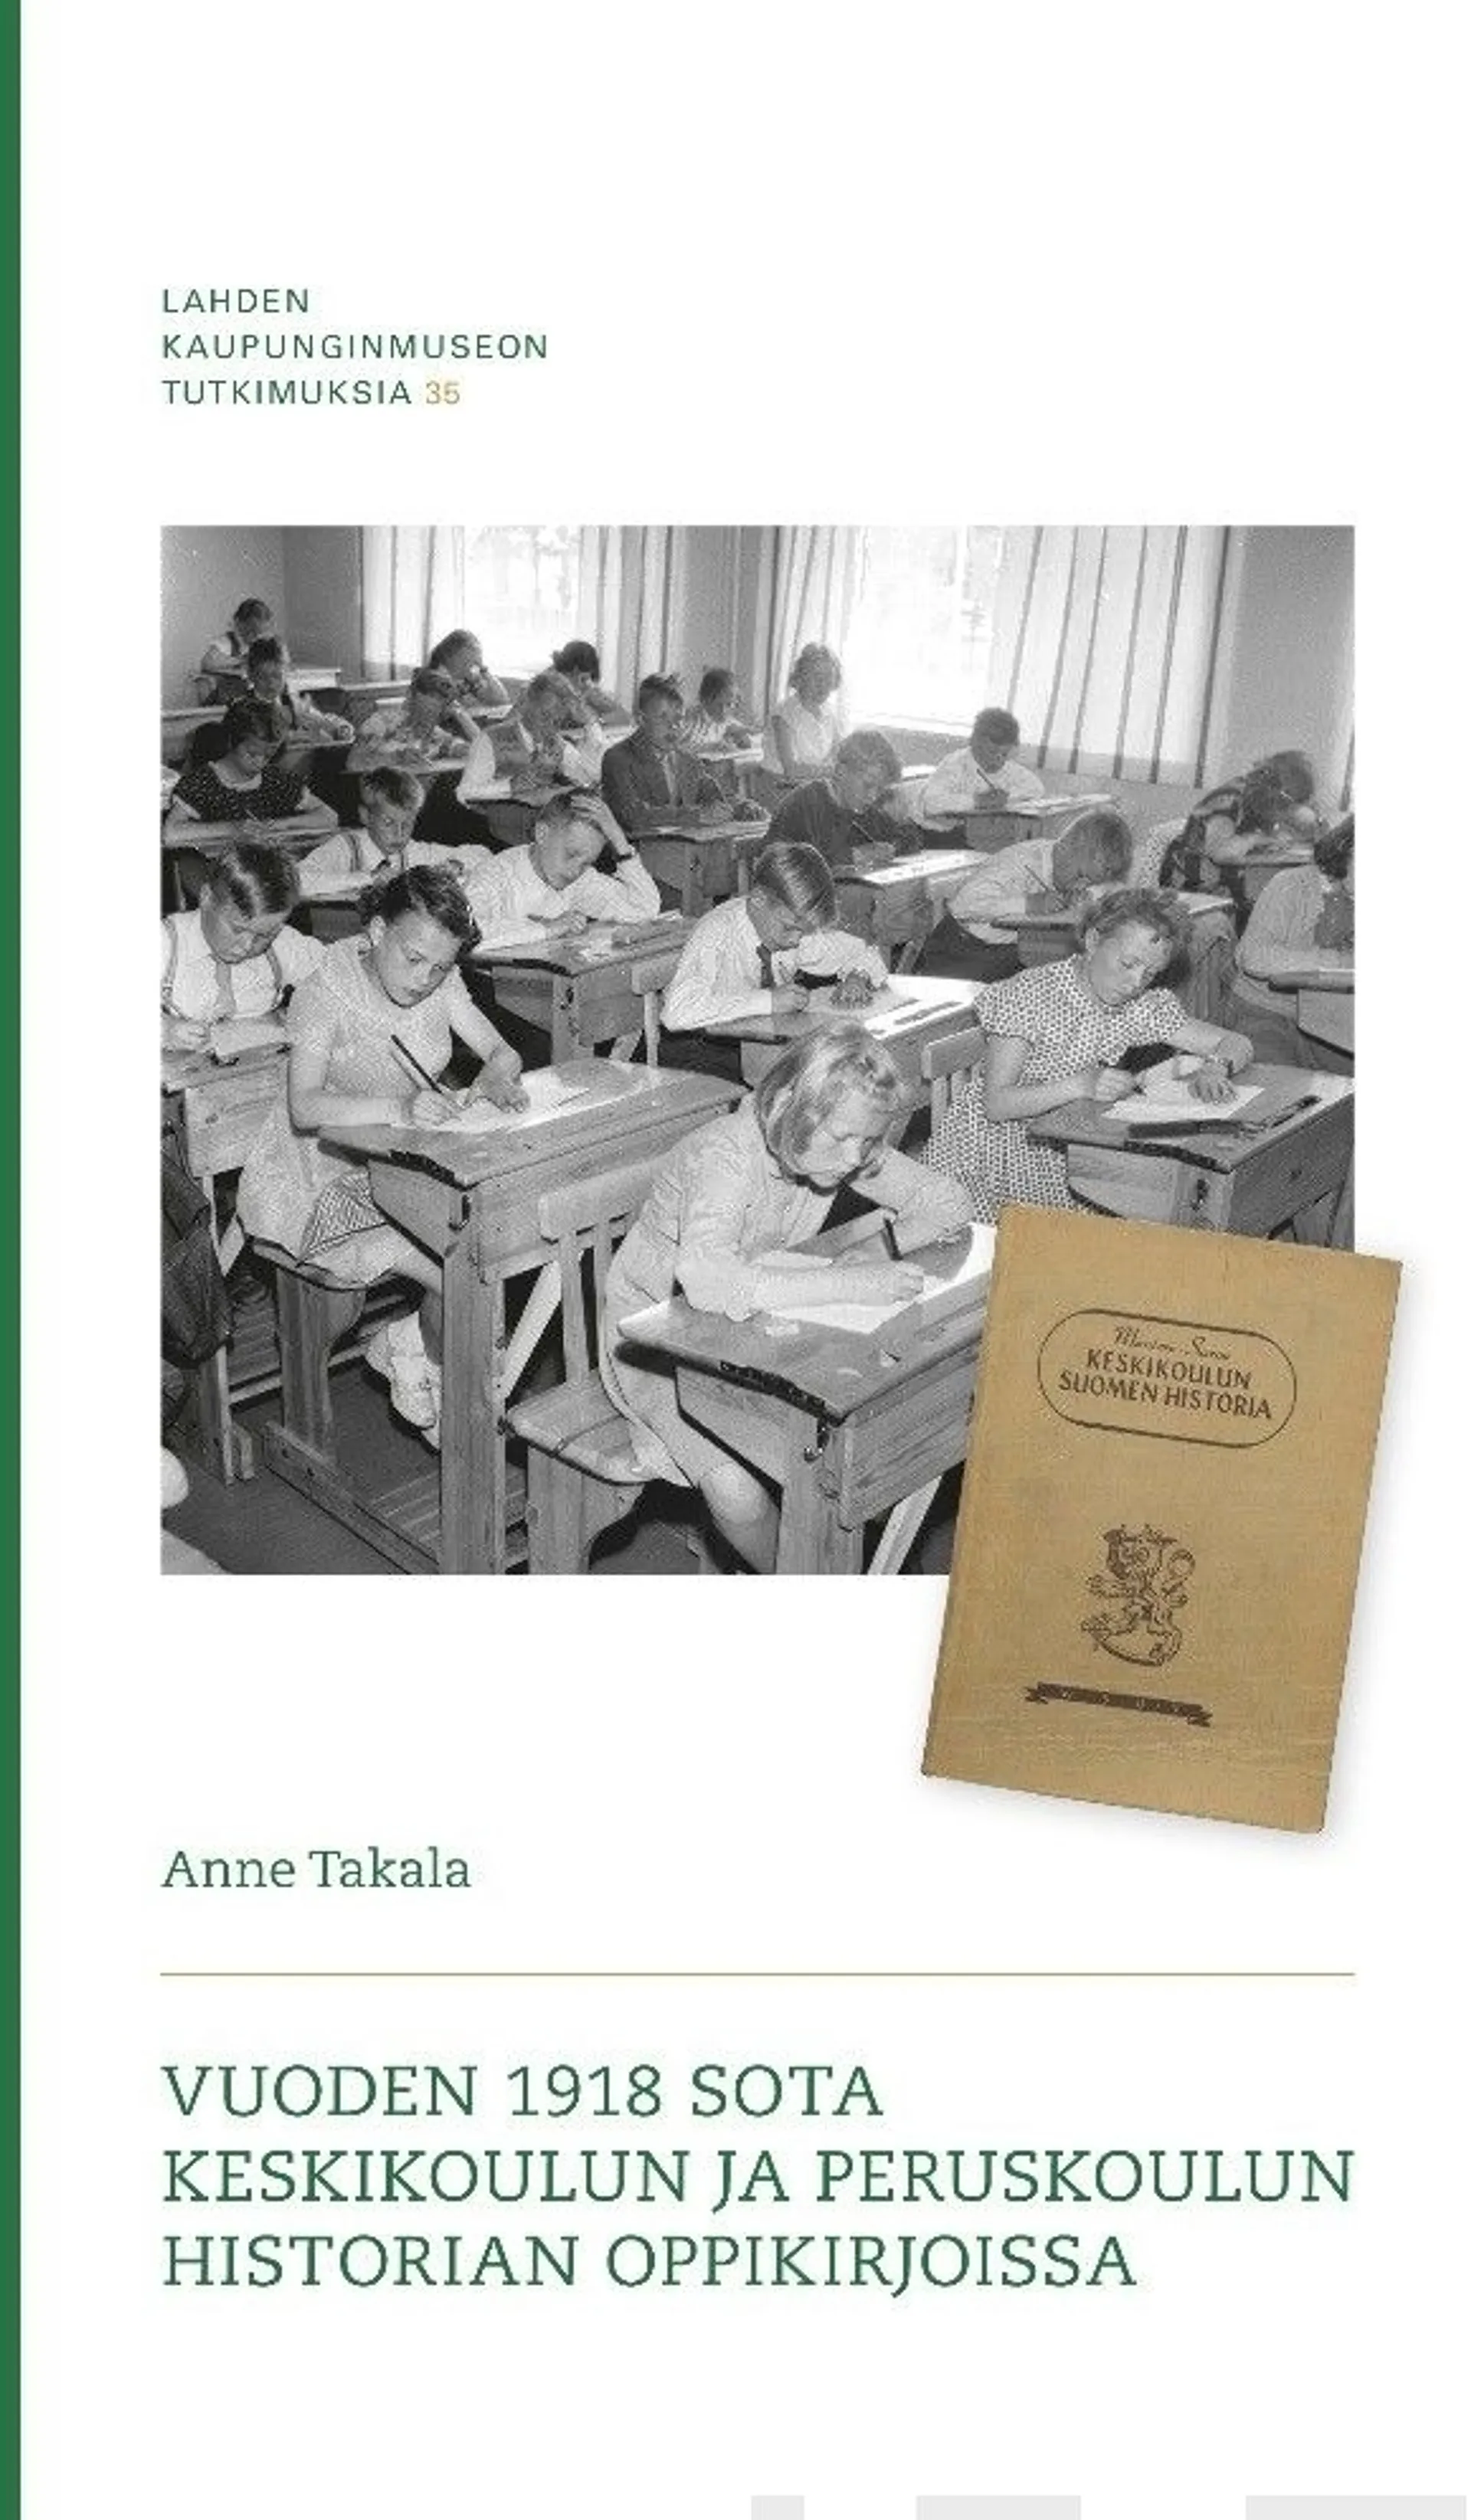 Takala, Vuoden 1918 sota keskikoulun ja peruskoulun historian oppikirjoissa